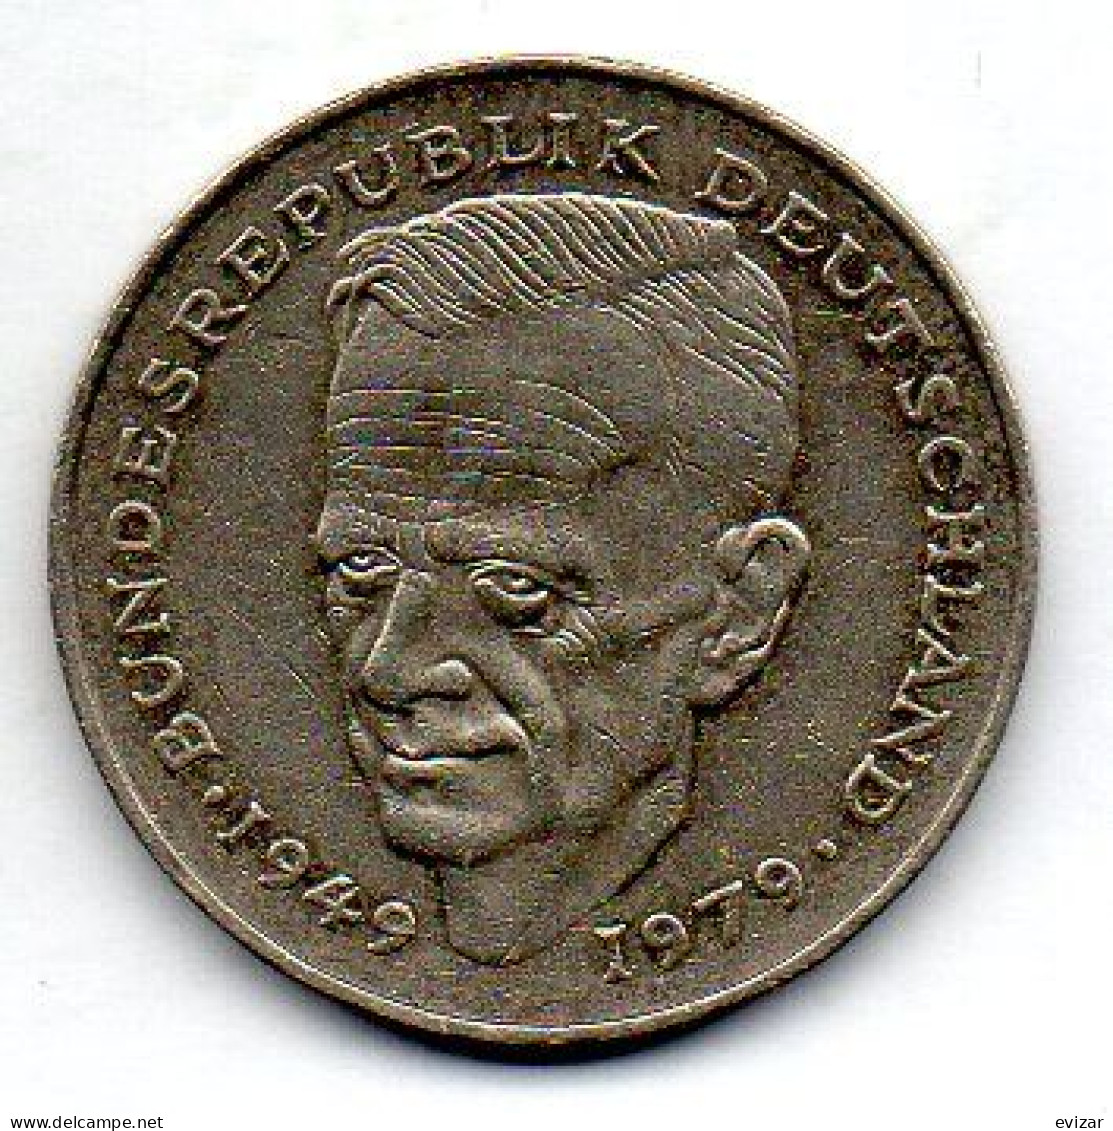 GERMANY - FEDERAL REPUBLIC, 2 Mark, Copper-Nickel, Year 1984-J, KM # 149 - 2 Marcos